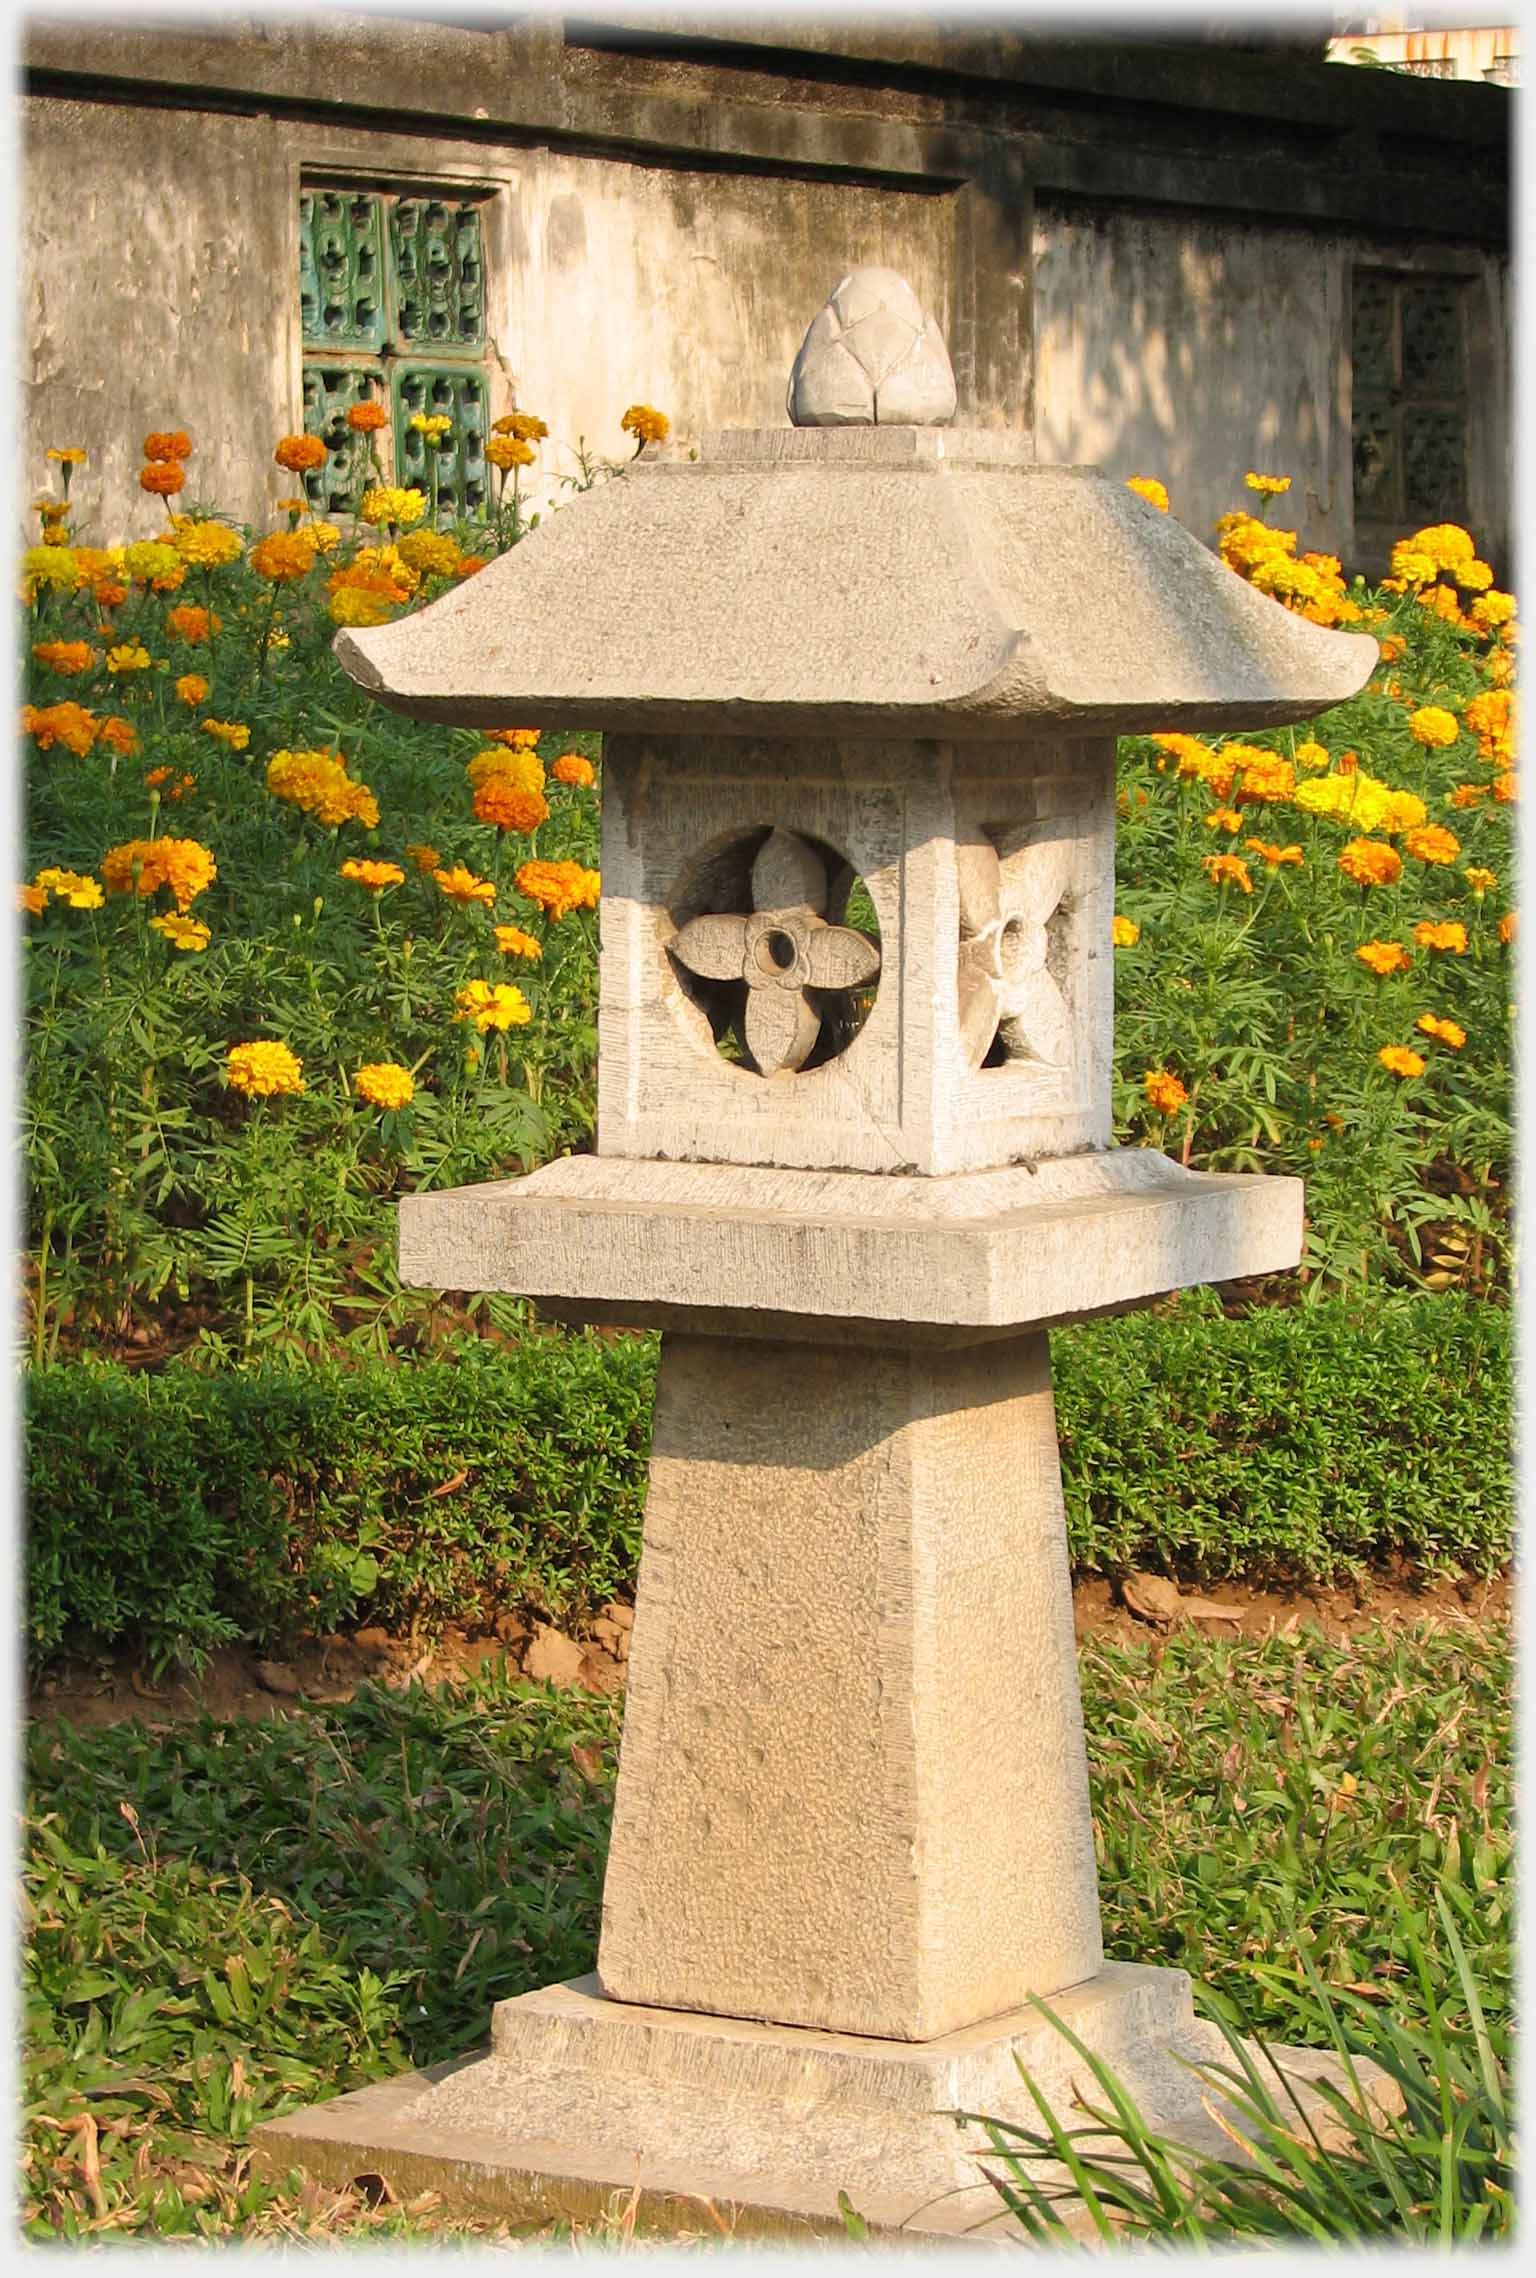 Stone garden lantern.